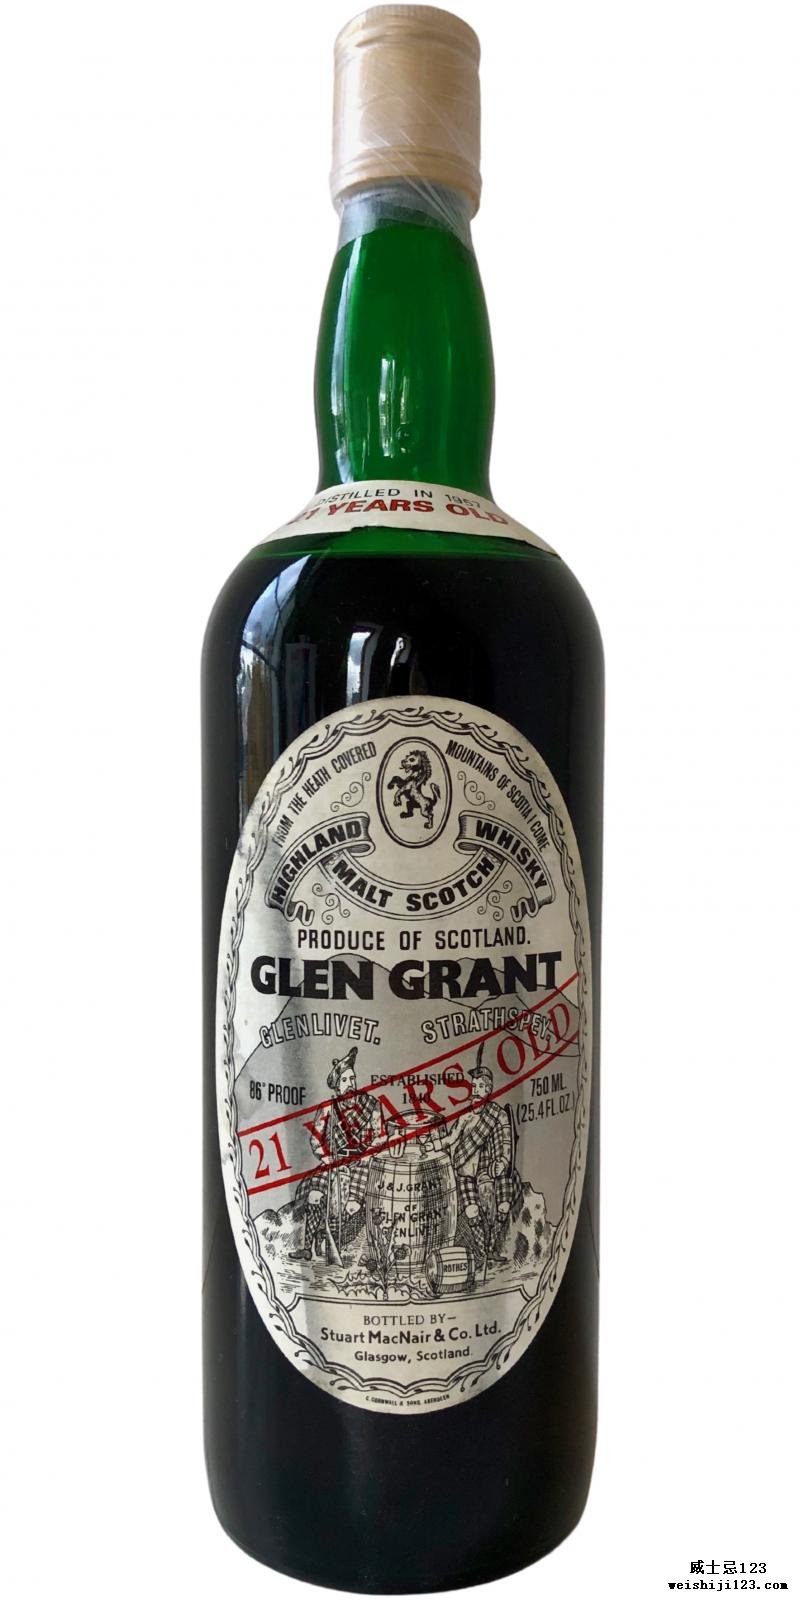 Glen Grant 1957 SMcN